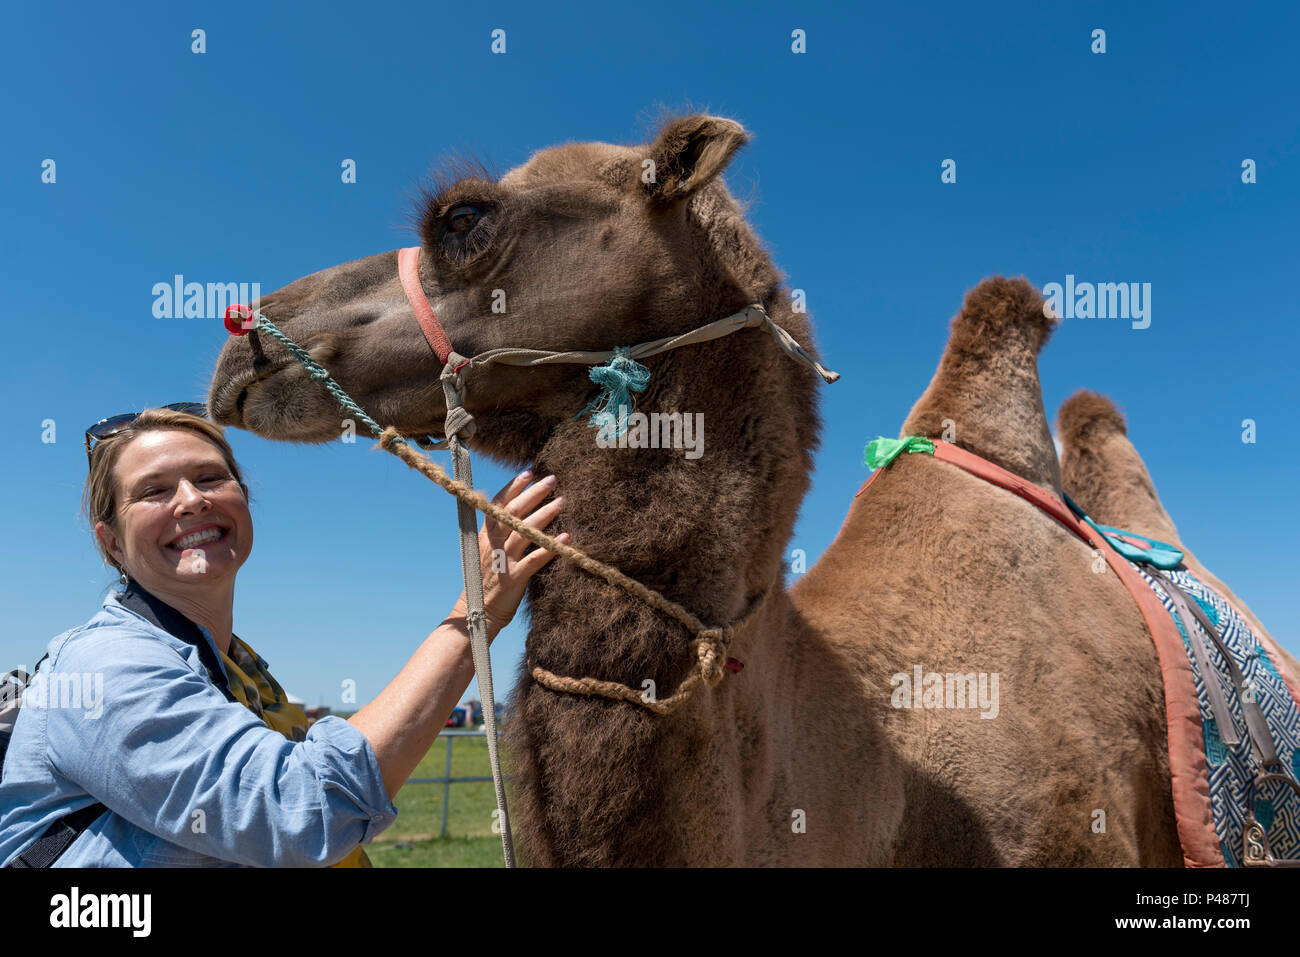 Un touriste américain répond à un chameau au Khan Mongol City Cultural Torism Resort, Xiwuzhumuginqi, Mongolie intérieure, Chine Banque D'Images